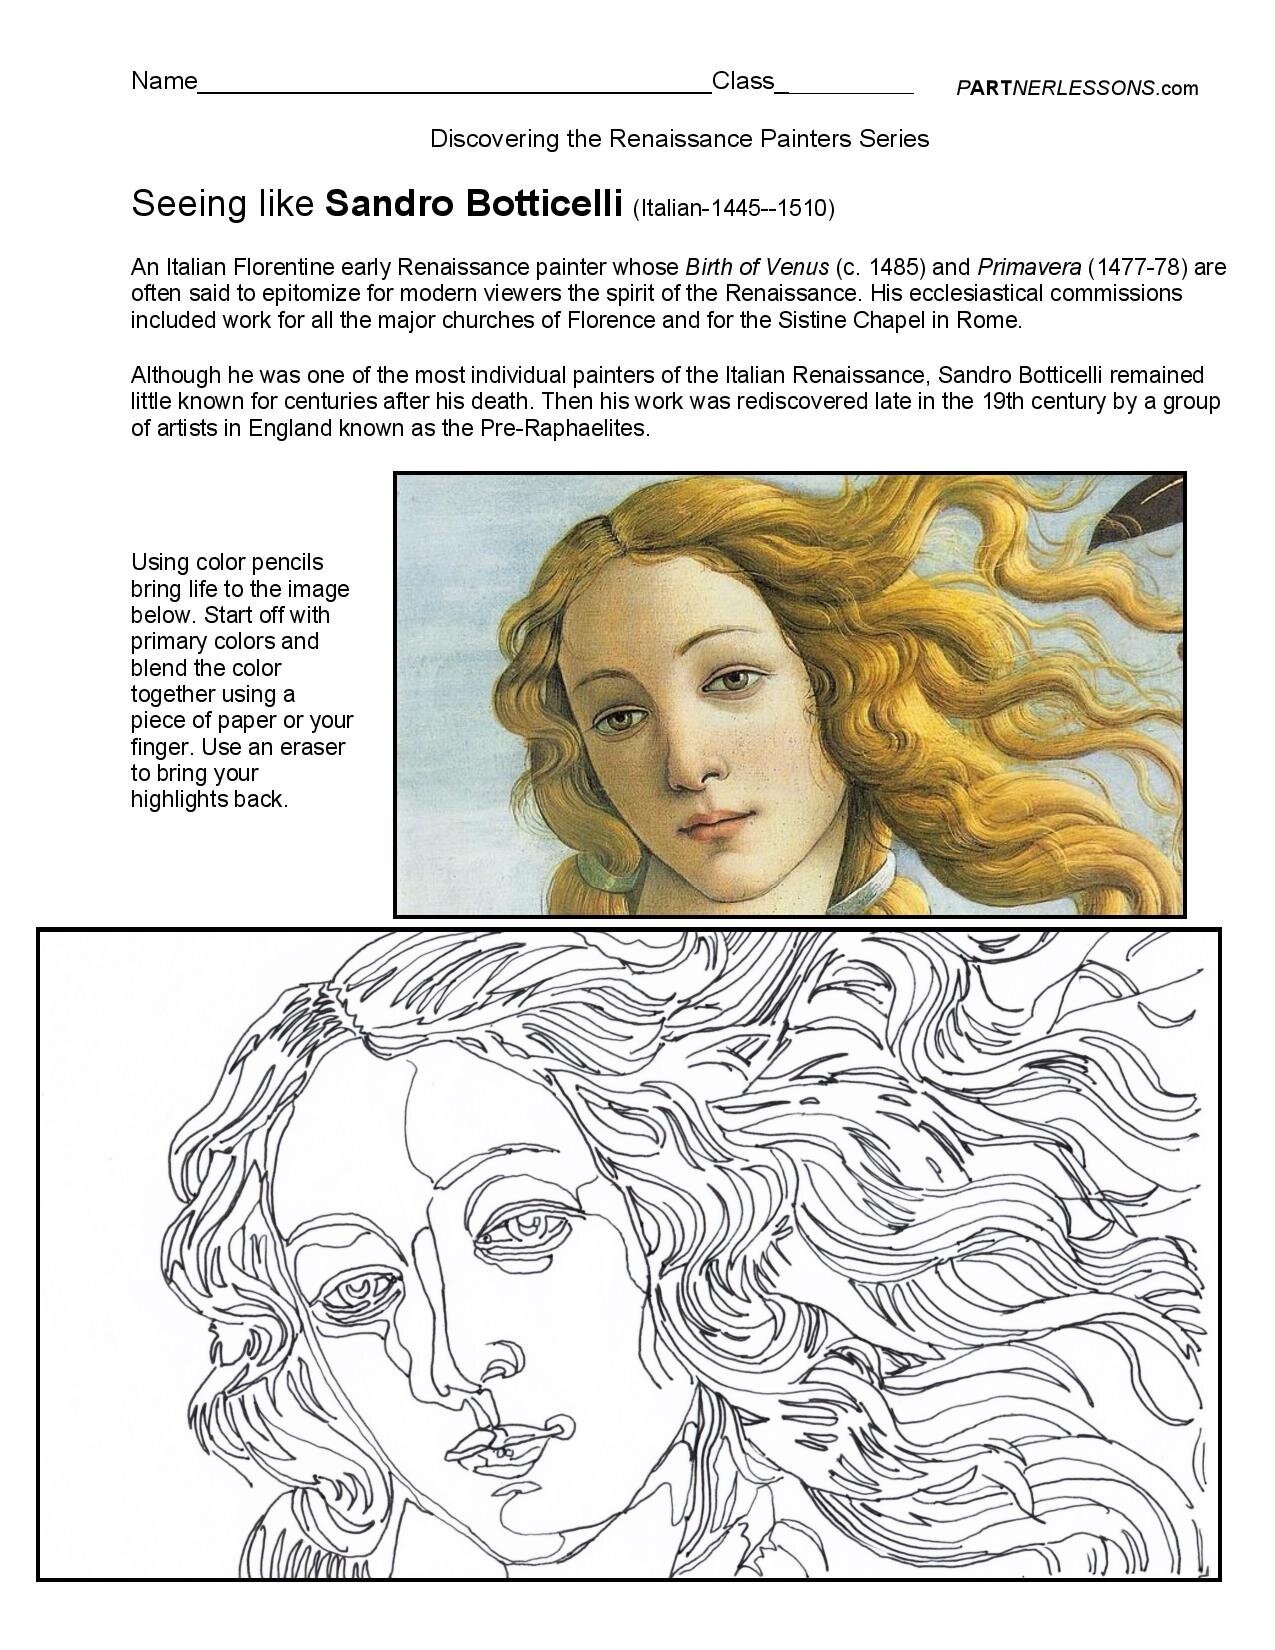 Botticelli copy.jpg